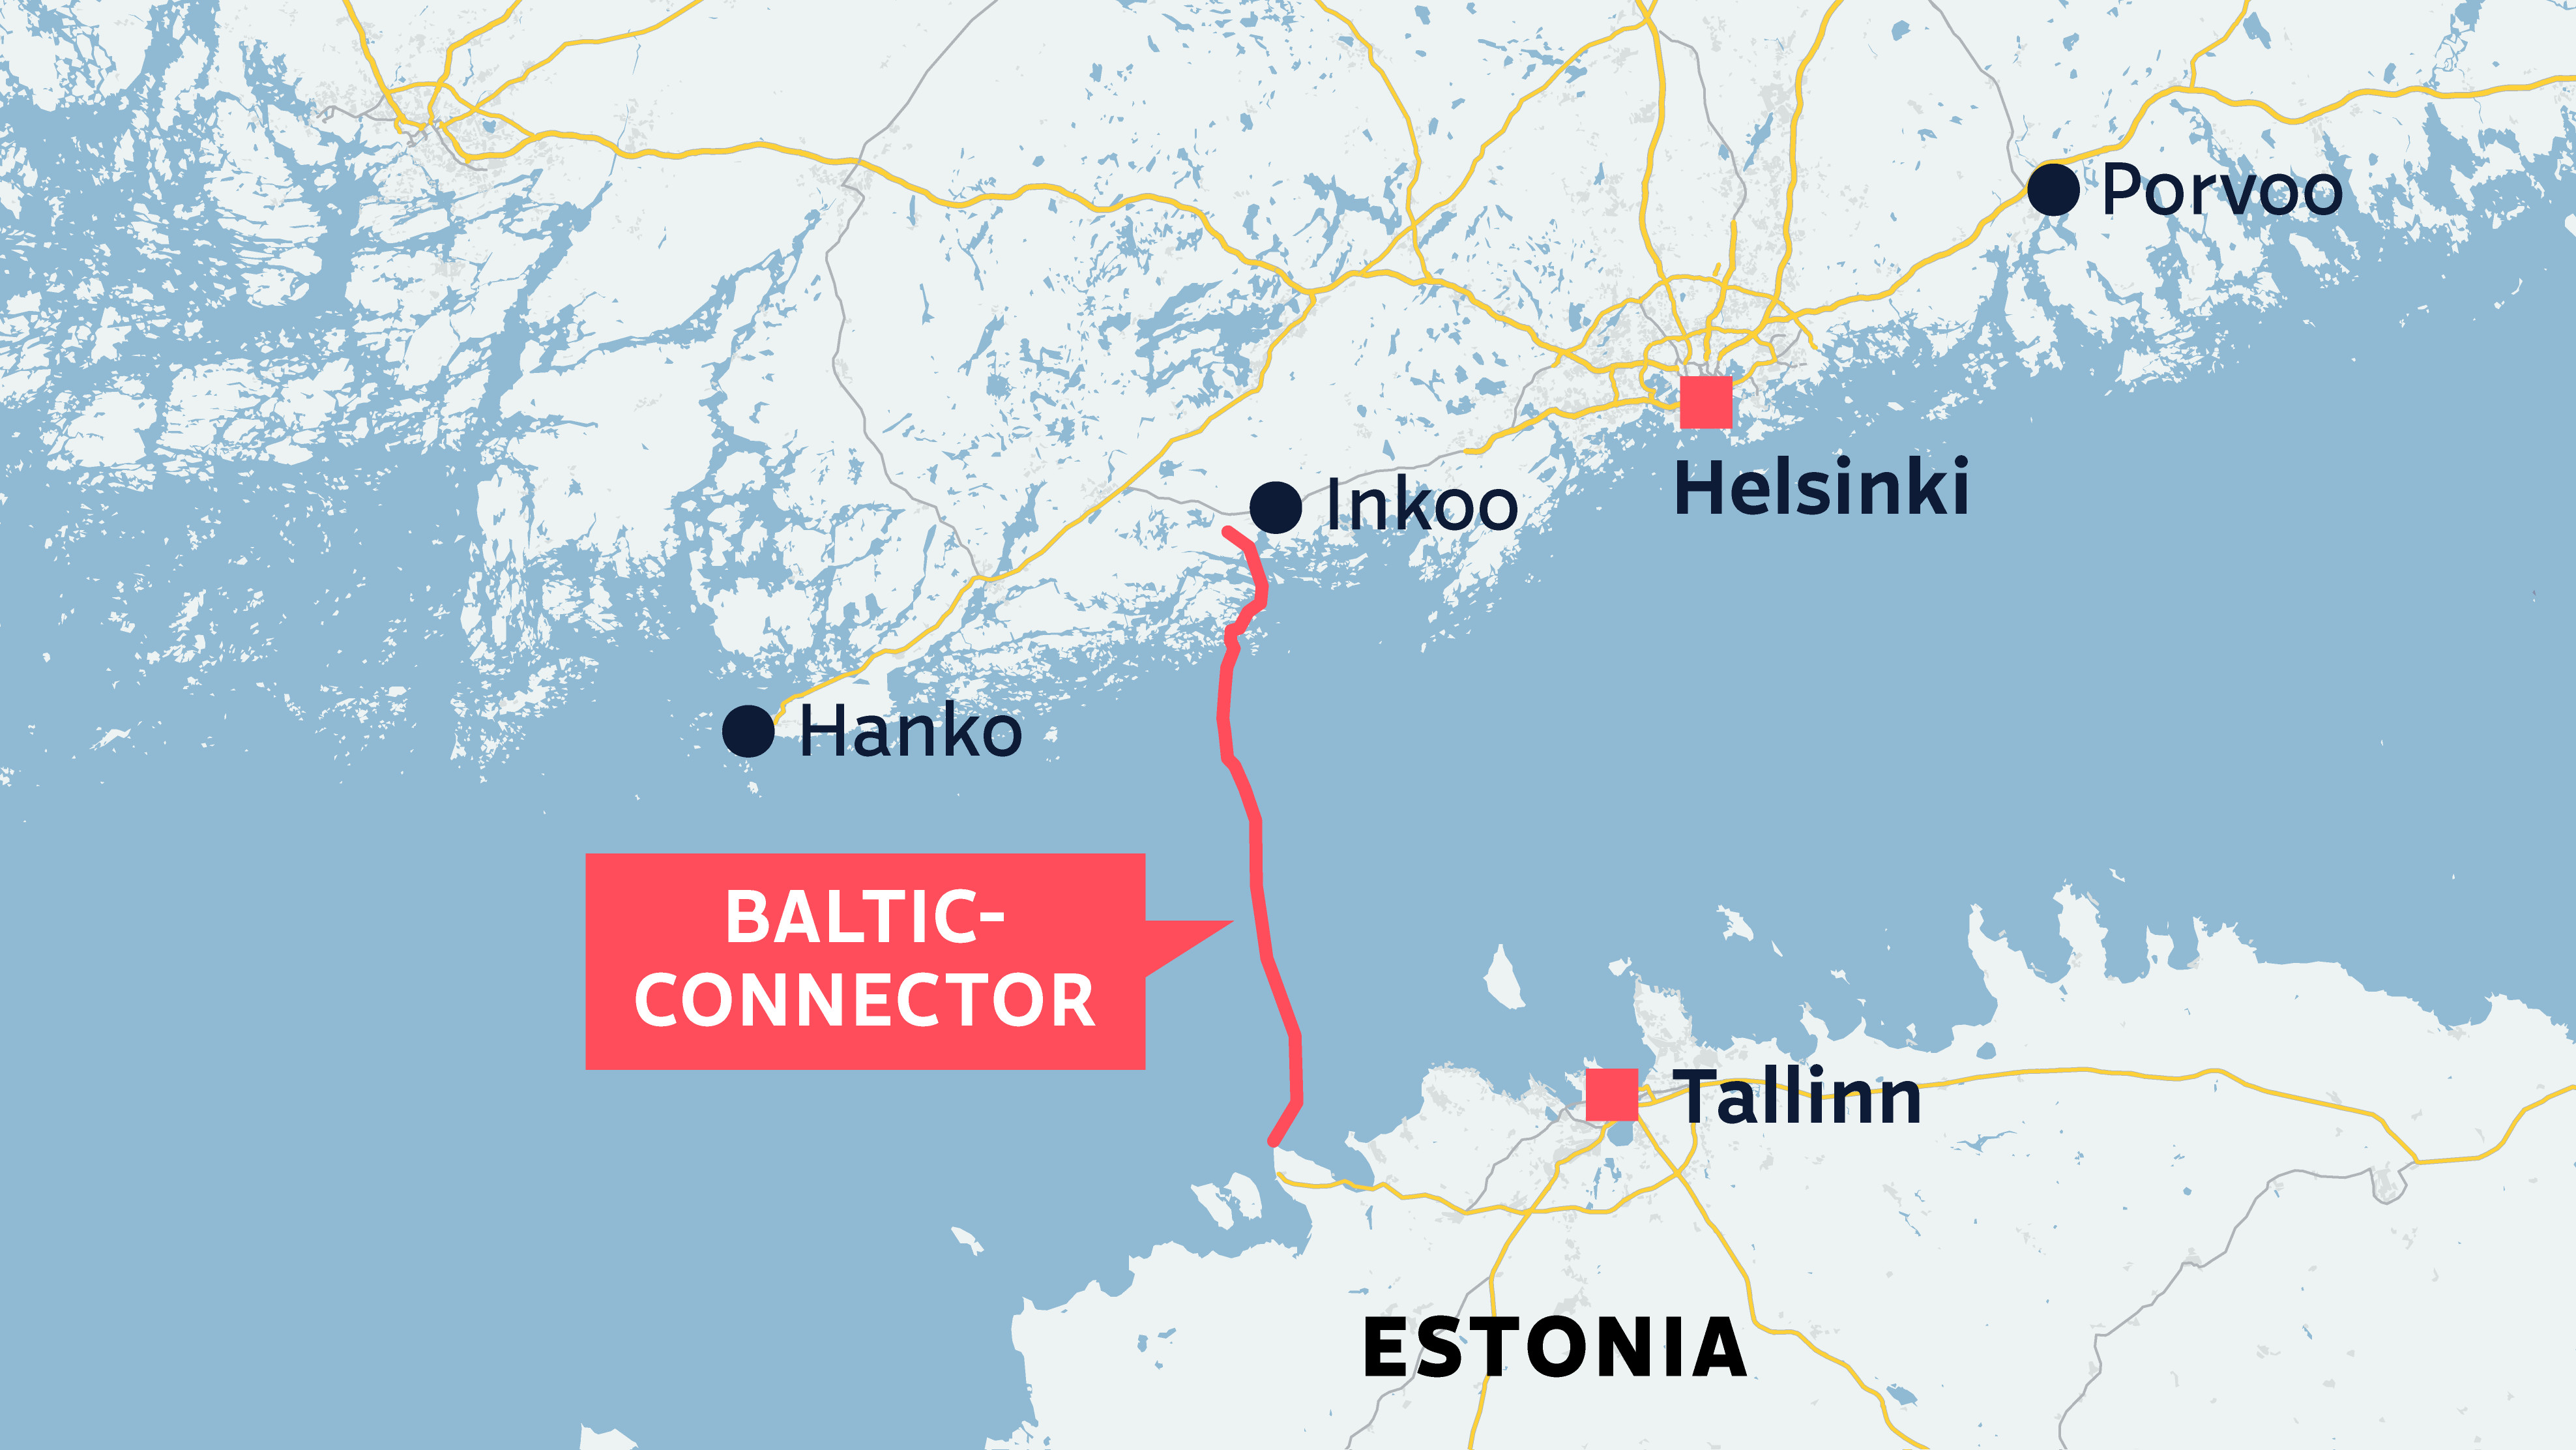 HS: Das russische Frachtschiff war das ganze Wochenende in der Nähe der beschädigten Pipeline